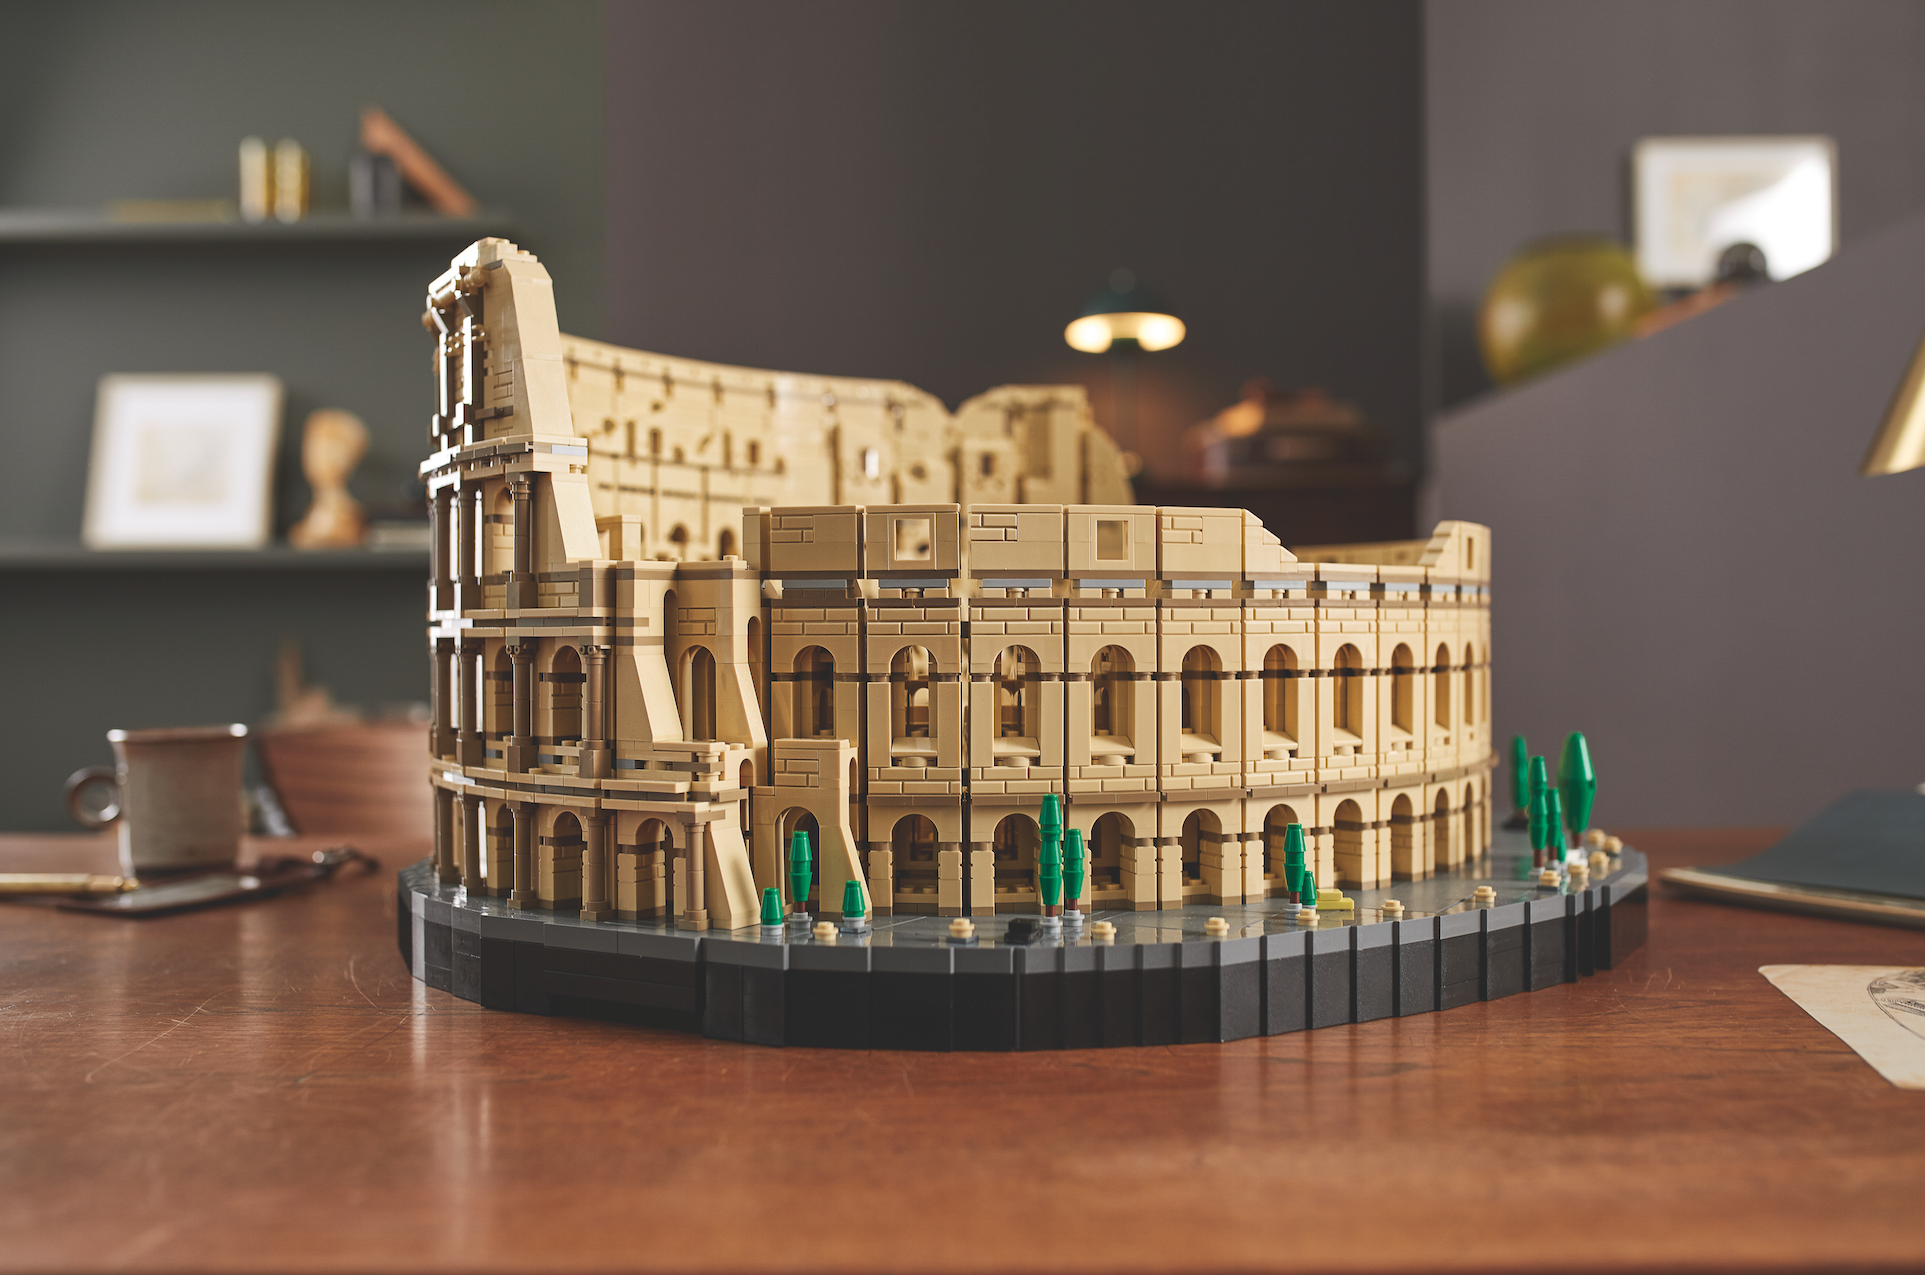 Conozca el Coliseo Romano en Lego, una maravilla en miniautura